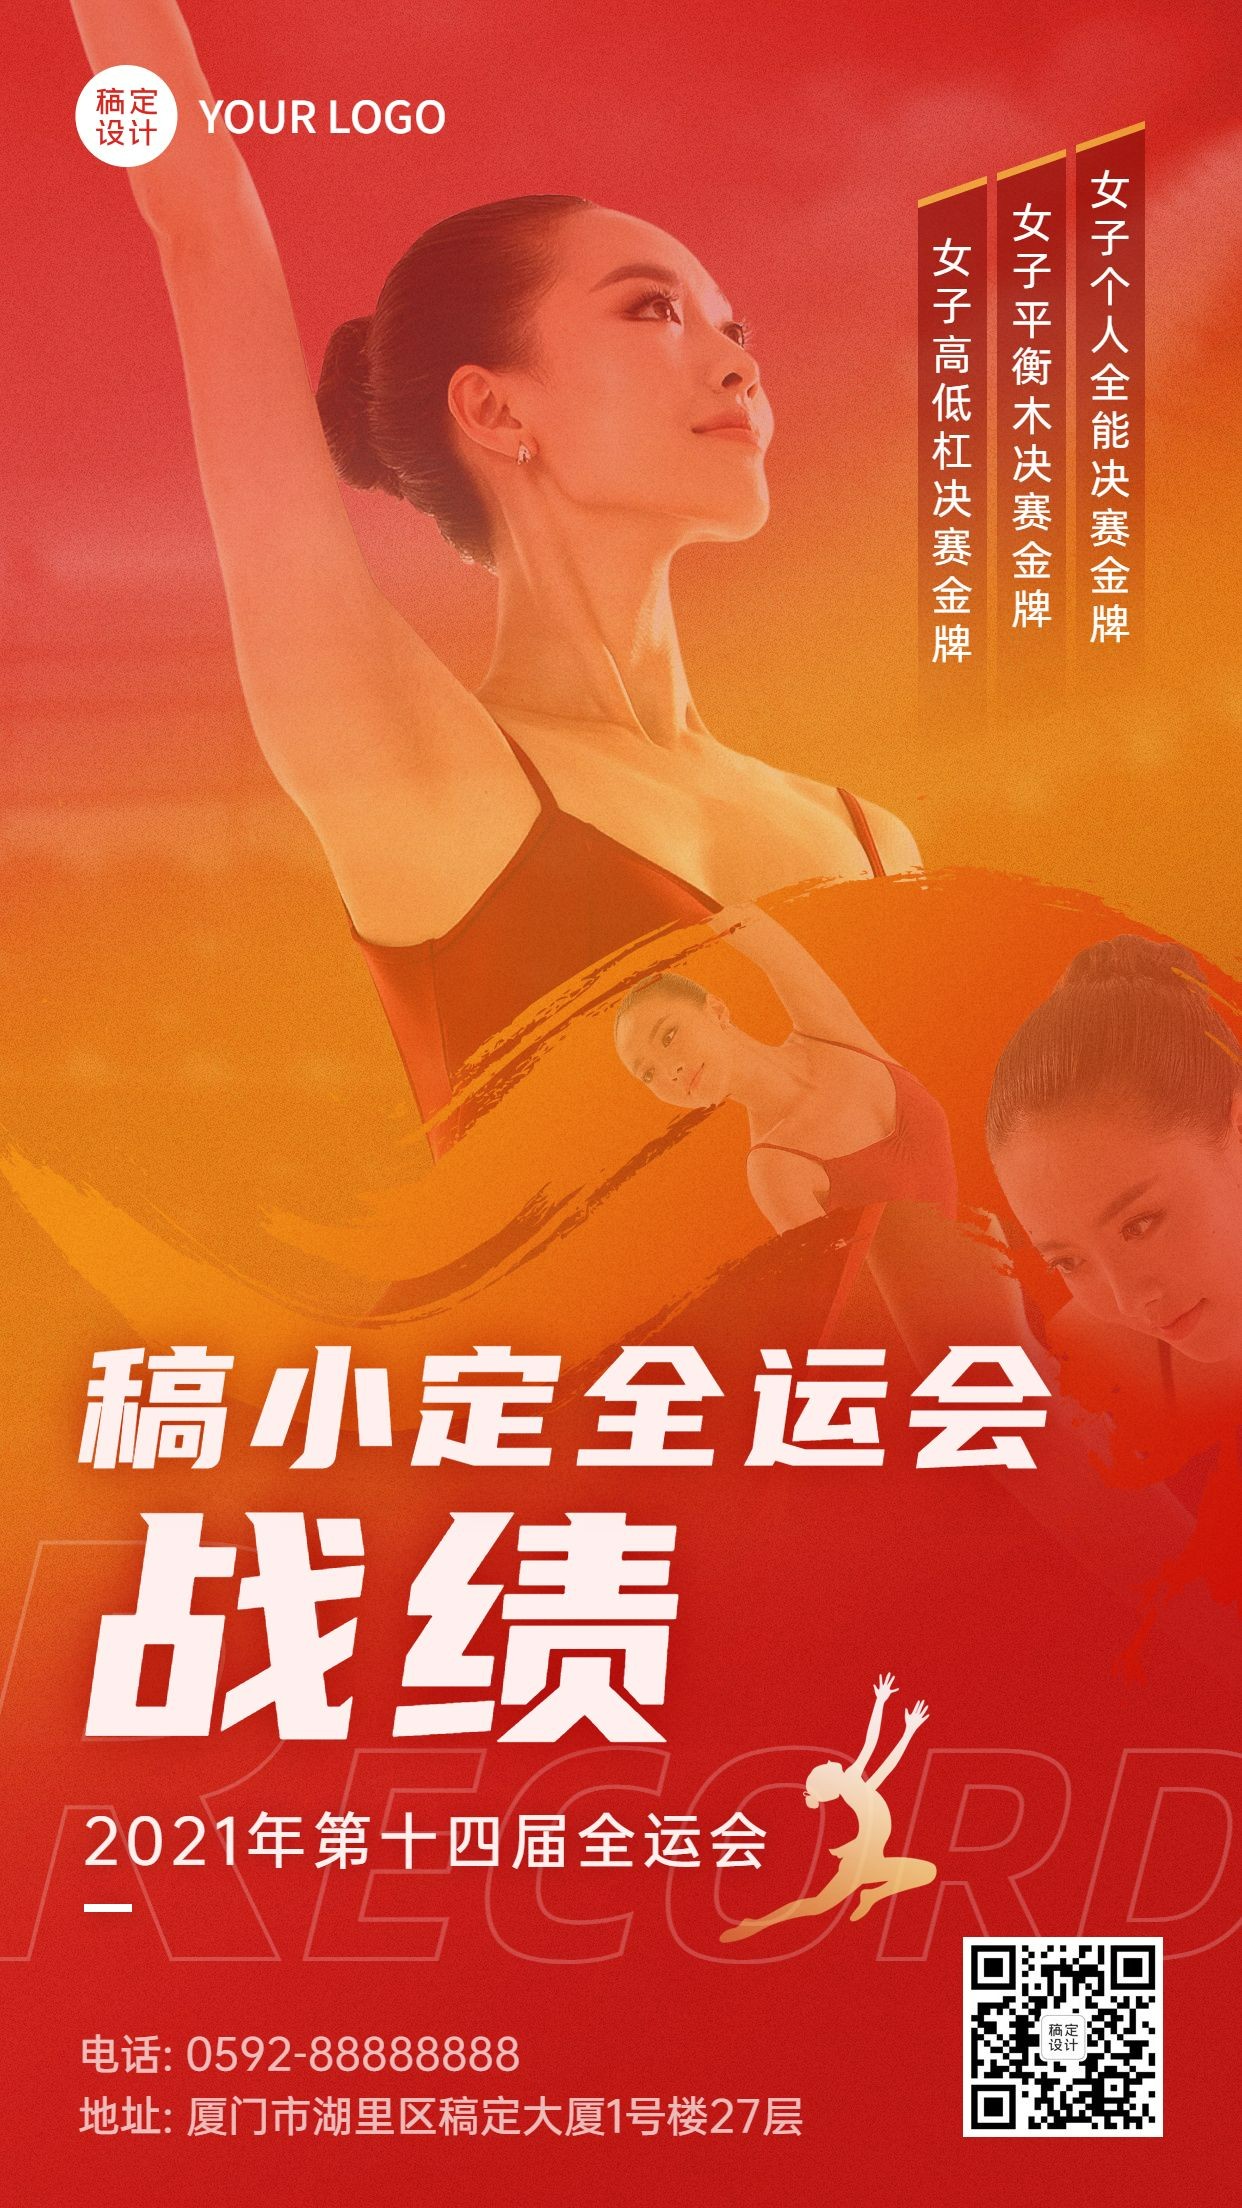 体操全运会金牌喜报喜庆手机海报